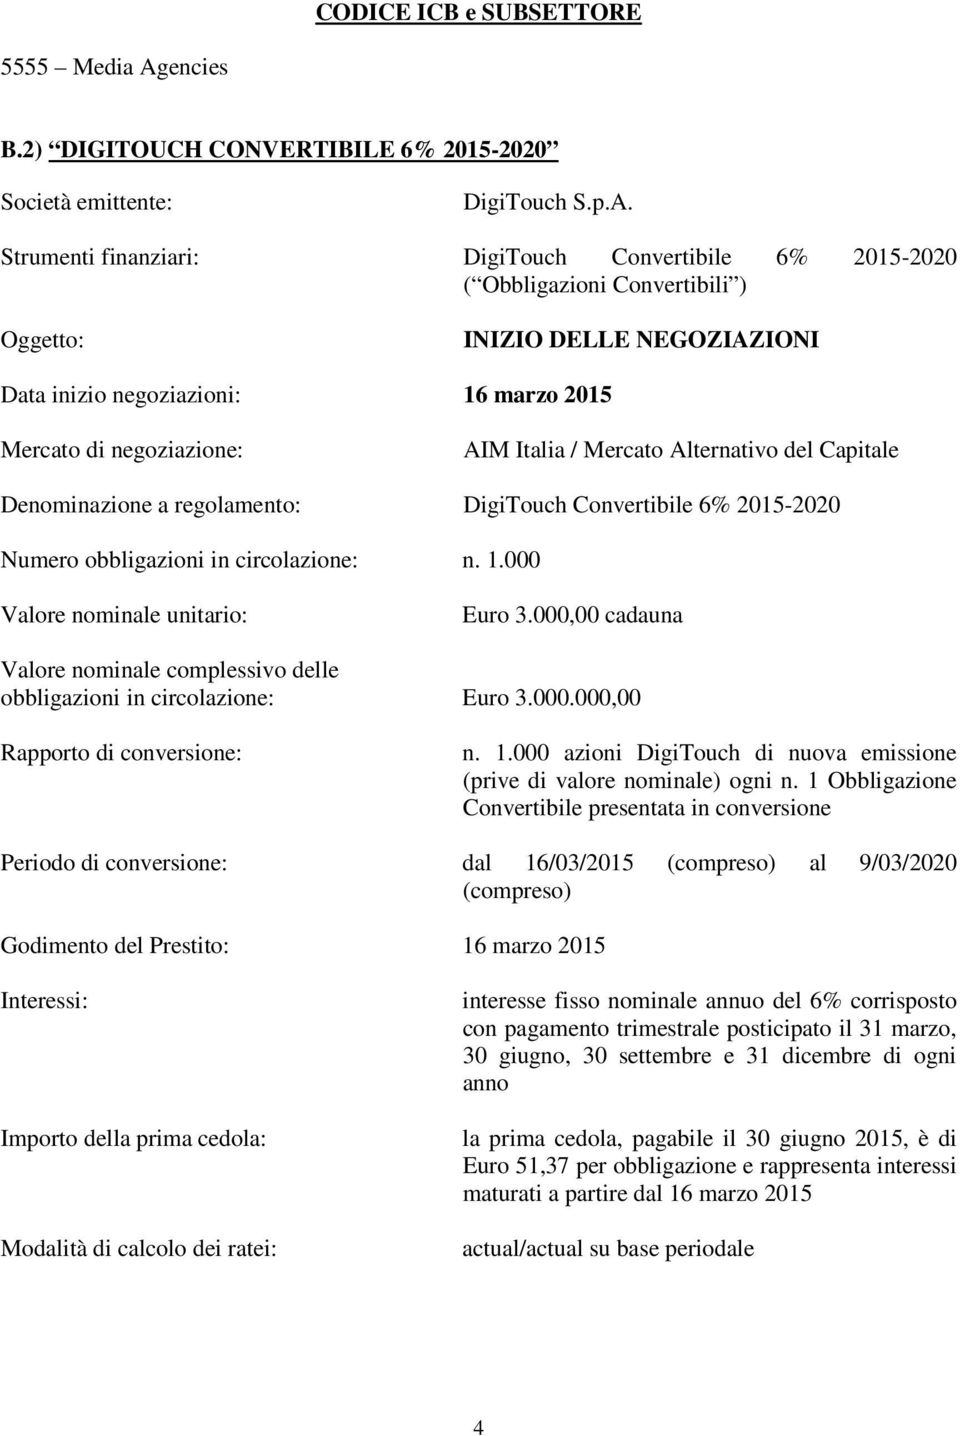 negoziazioni: 16 marzo 2015 Mercato di negoziazione: AIM Italia / Mercato Alternativo del Capitale Denominazione a regolamento: DigiTouch Convertibile 6% 2015-2020 Numero obbligazioni in